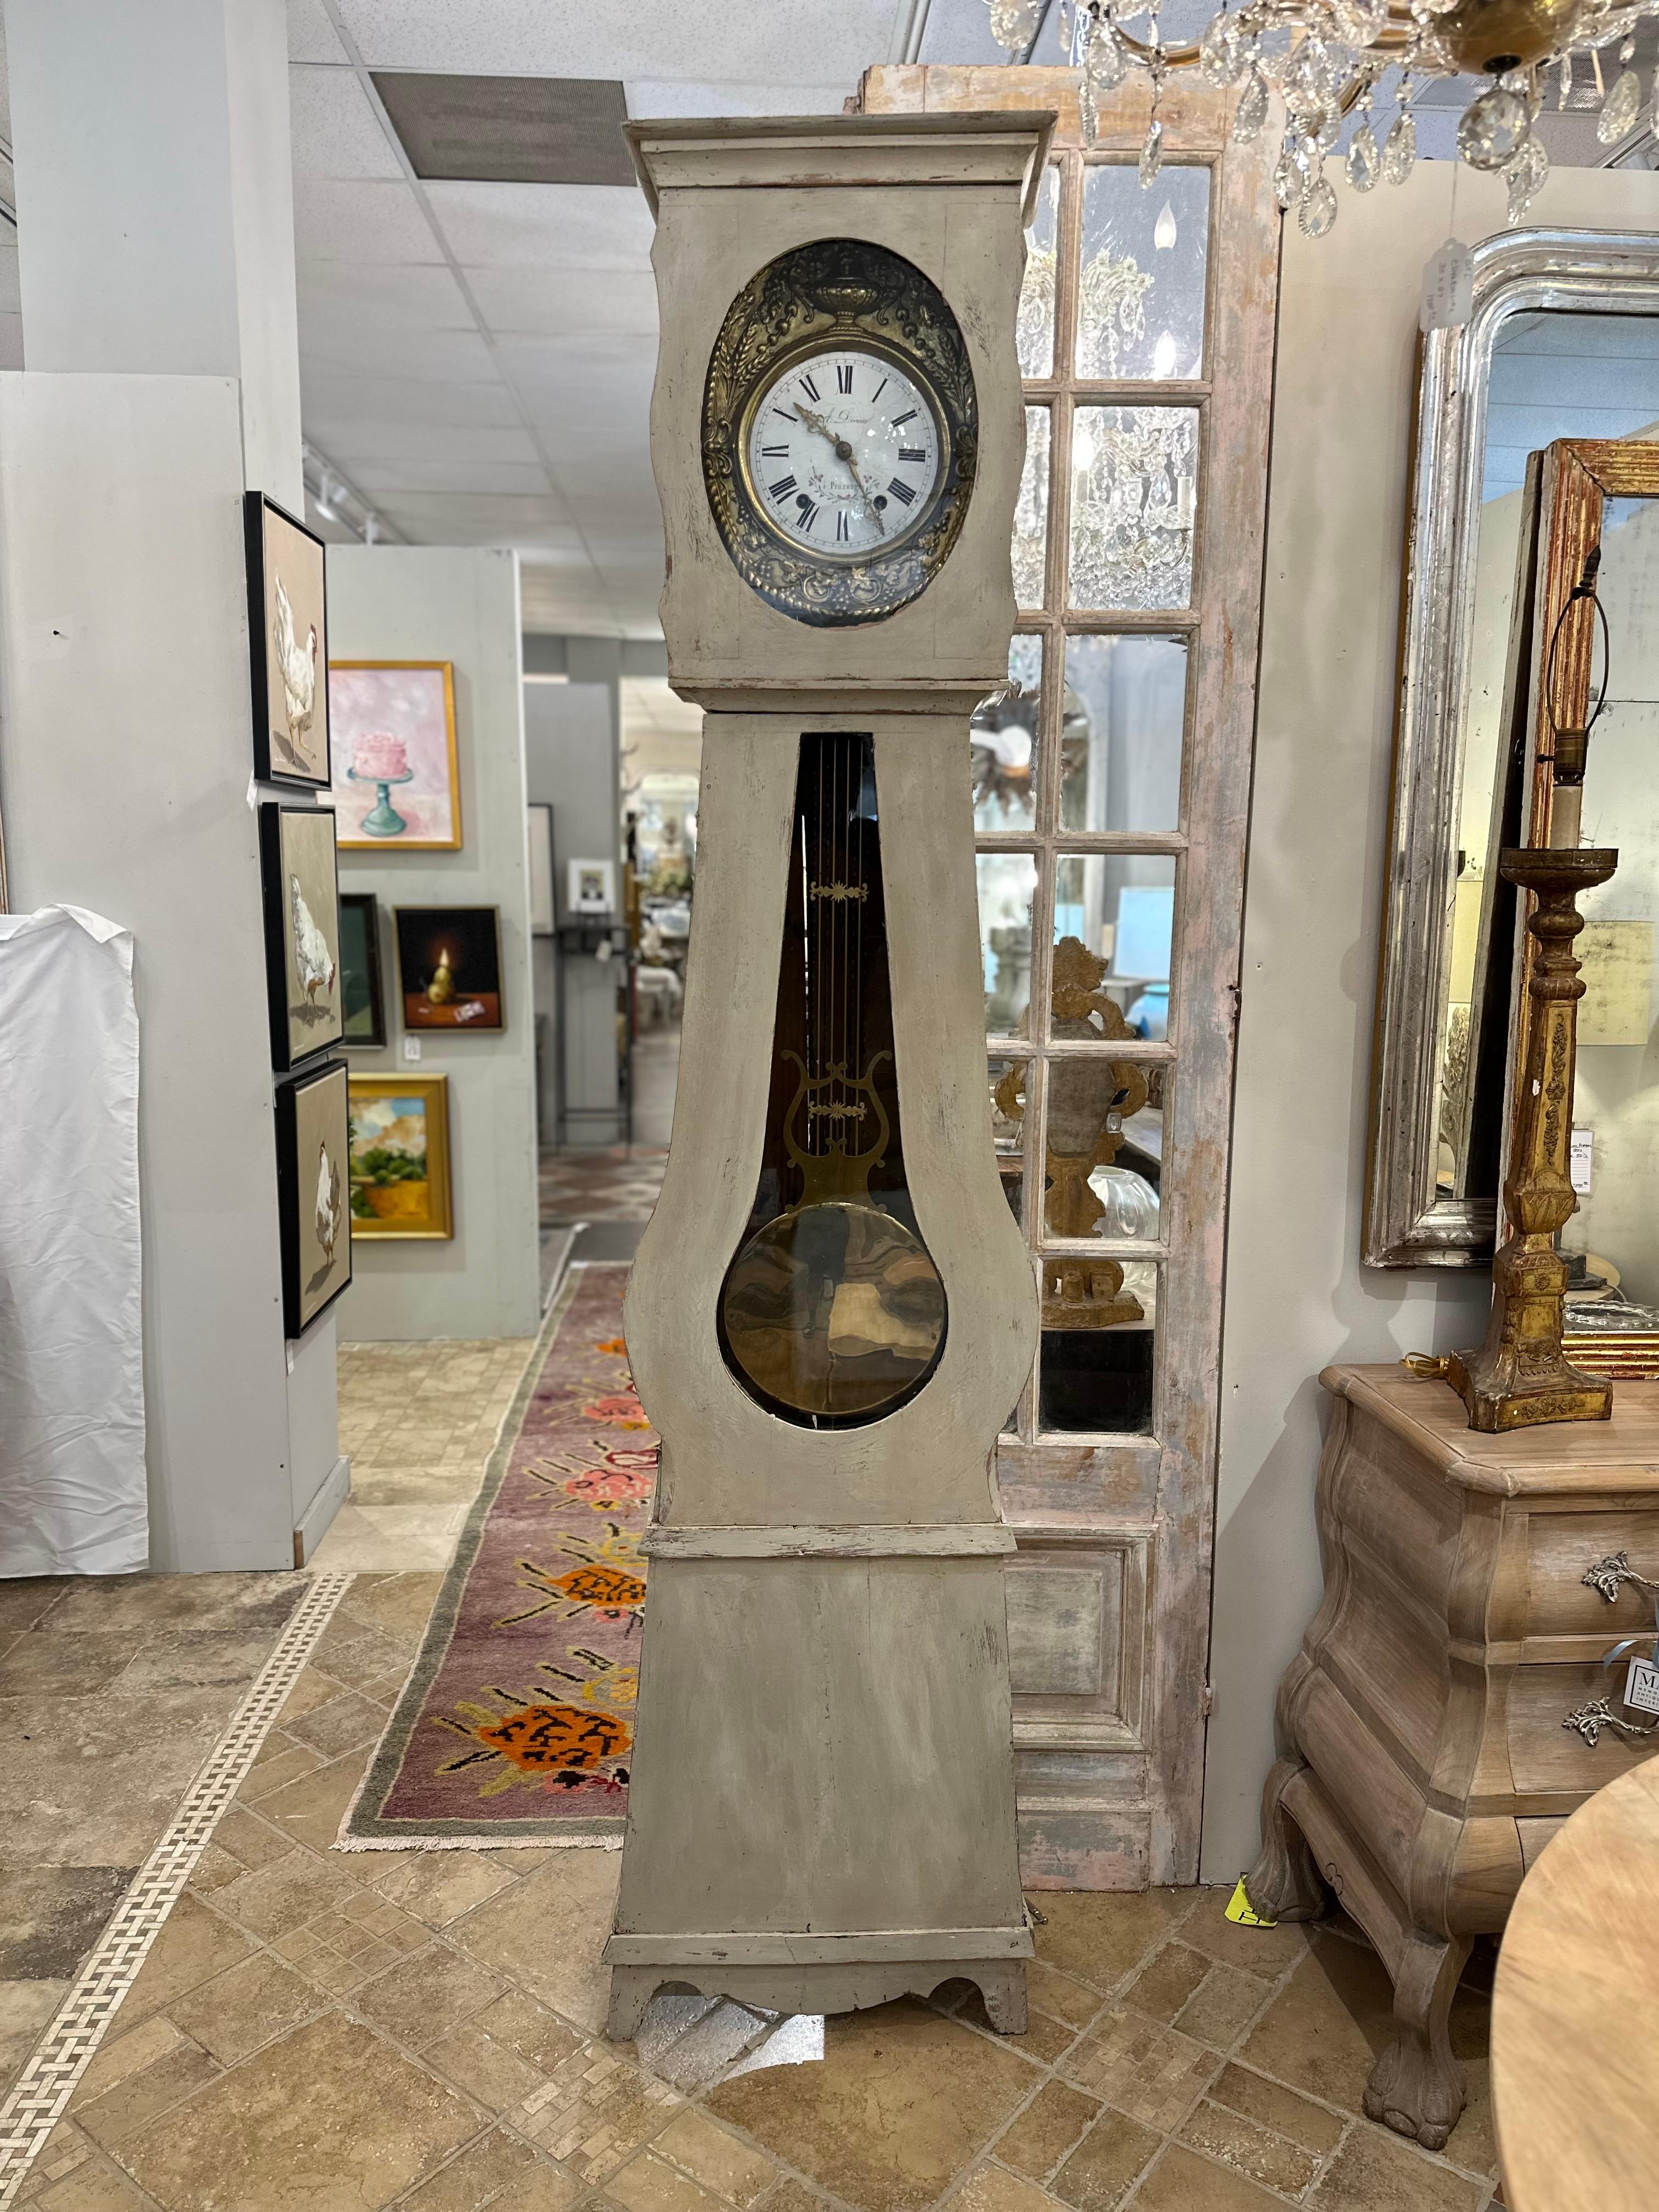 L'horloge grand-père suédoise peinte du début du XXe siècle est un témoignage de l'artisanat exquis et de la beauté intemporelle de son époque. Doré et minutieusement sculpté sur le pourtour de son cadran, ce garde-temps majestueux respire